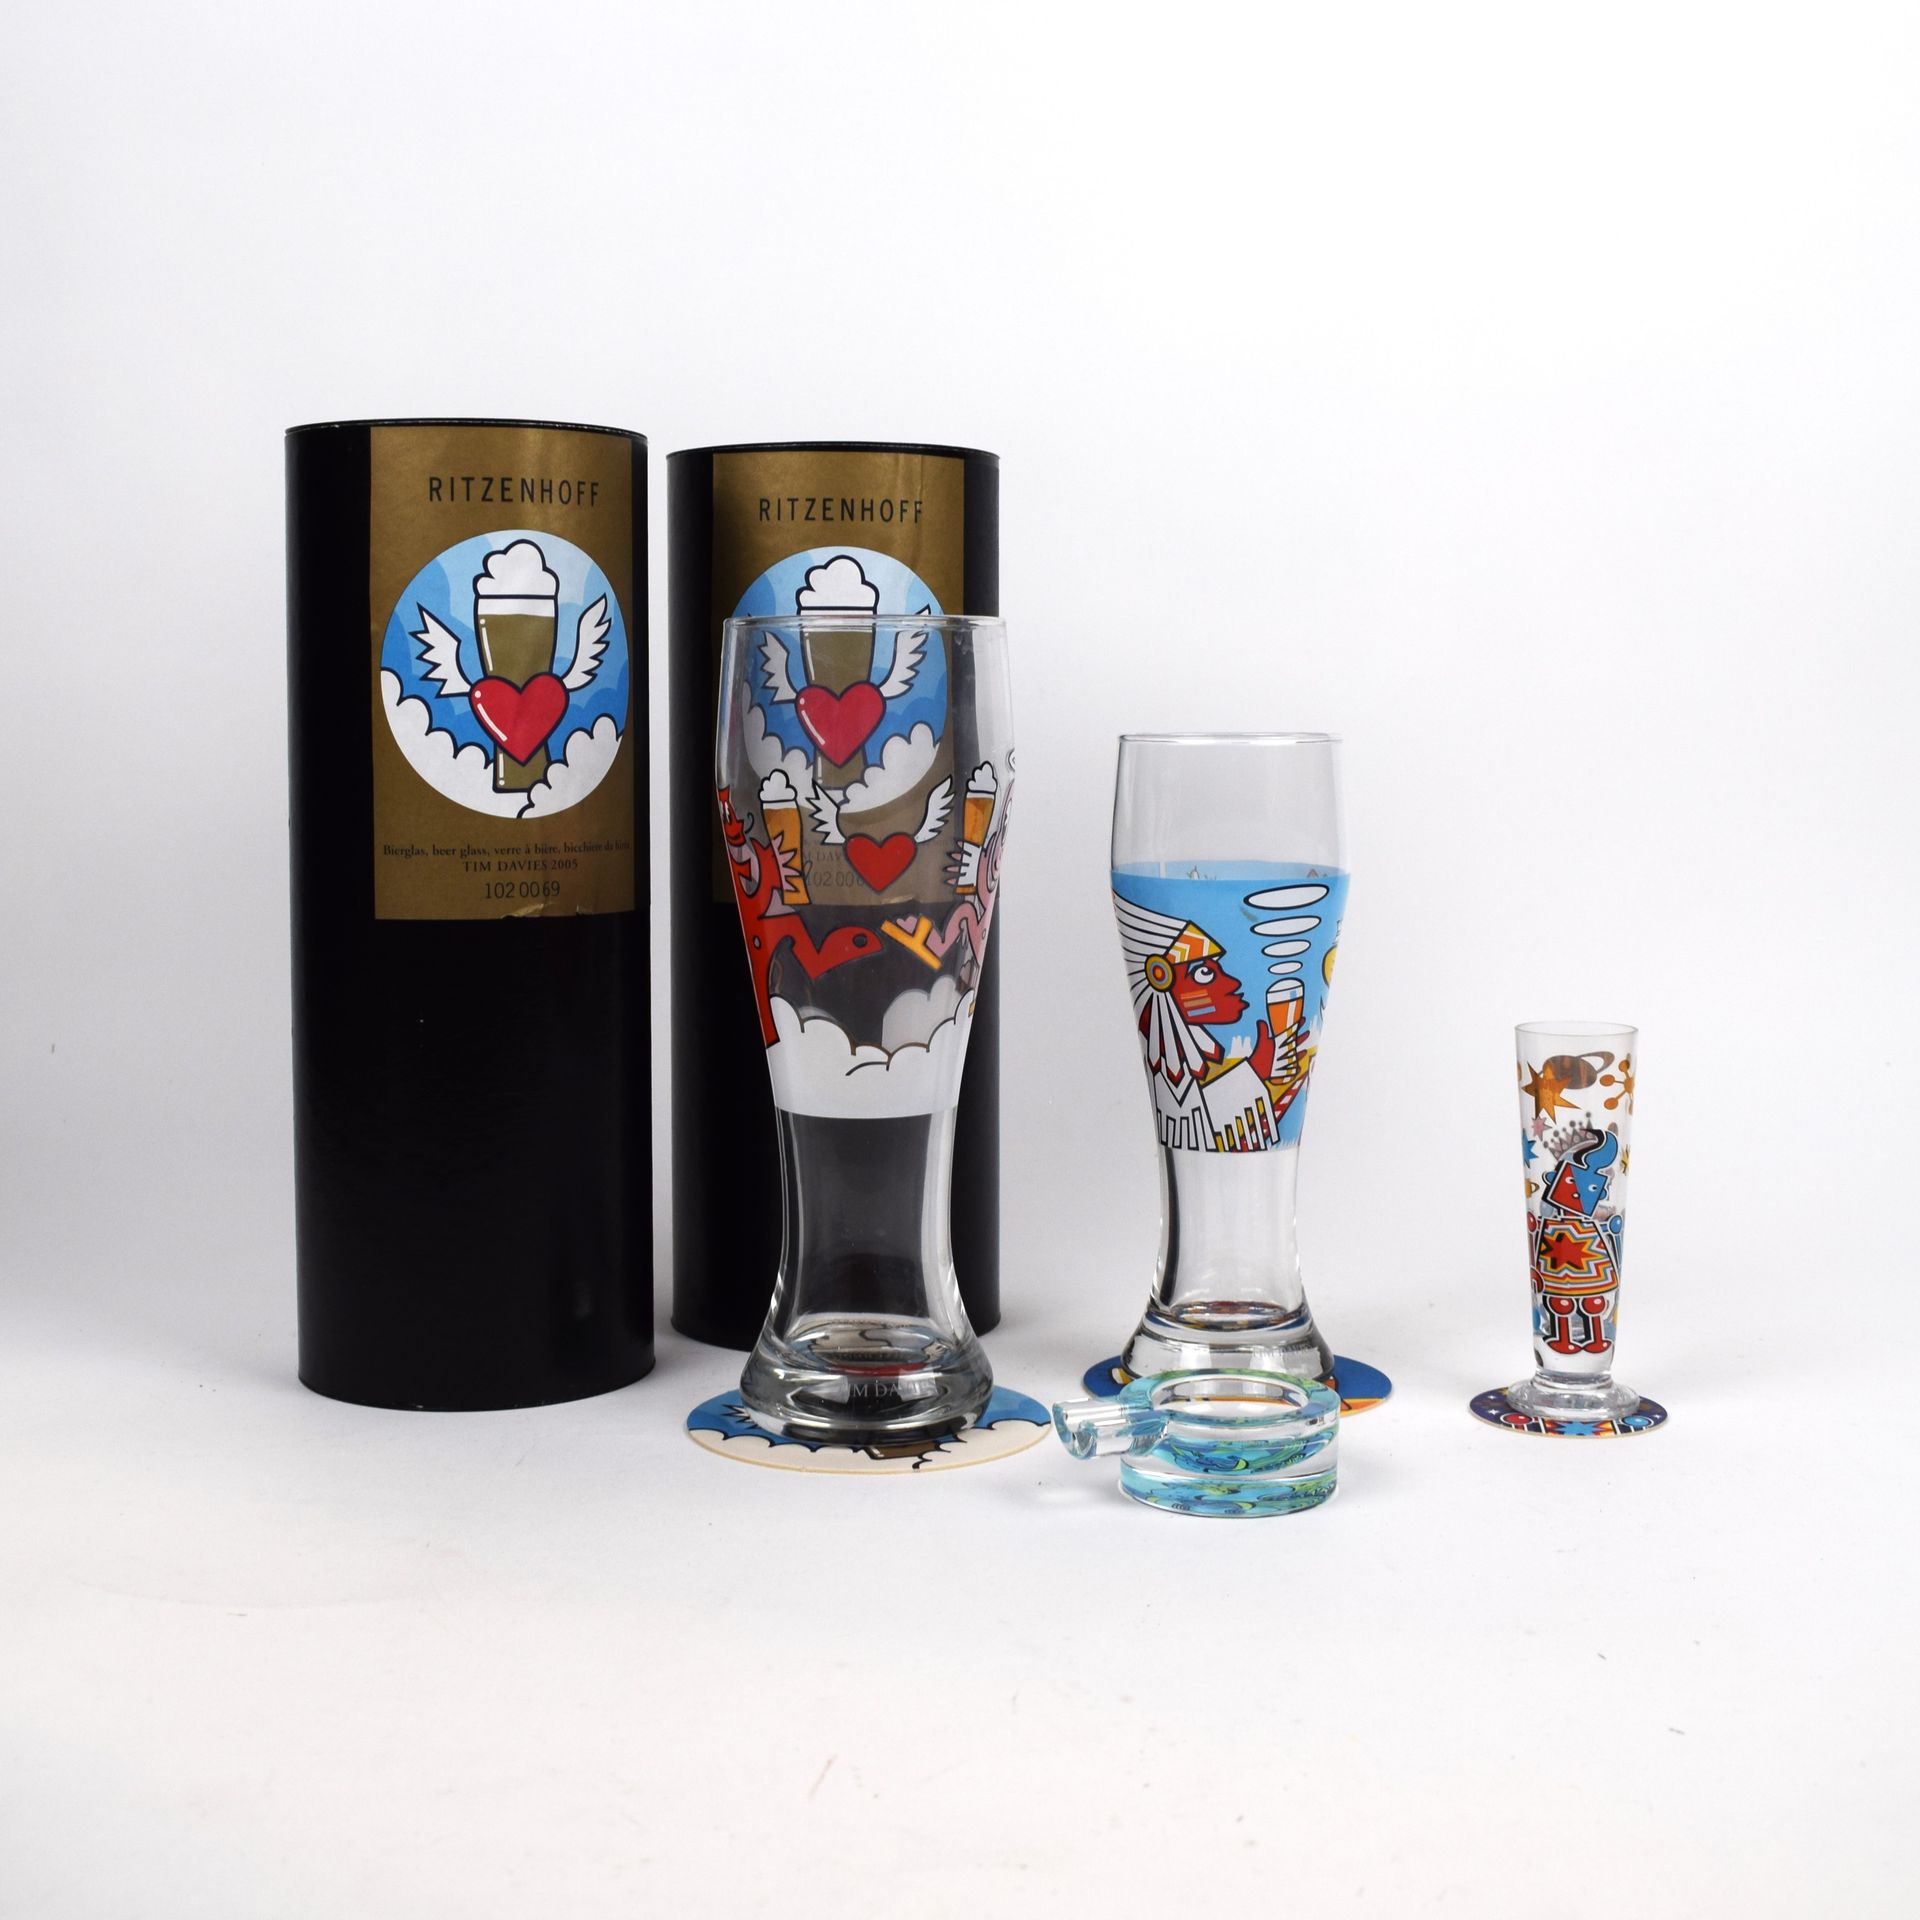 Null RITZENHOFF. Colección de vasos diseñada por Tim DAVIES :
- 3 vasos de cerve&hellip;